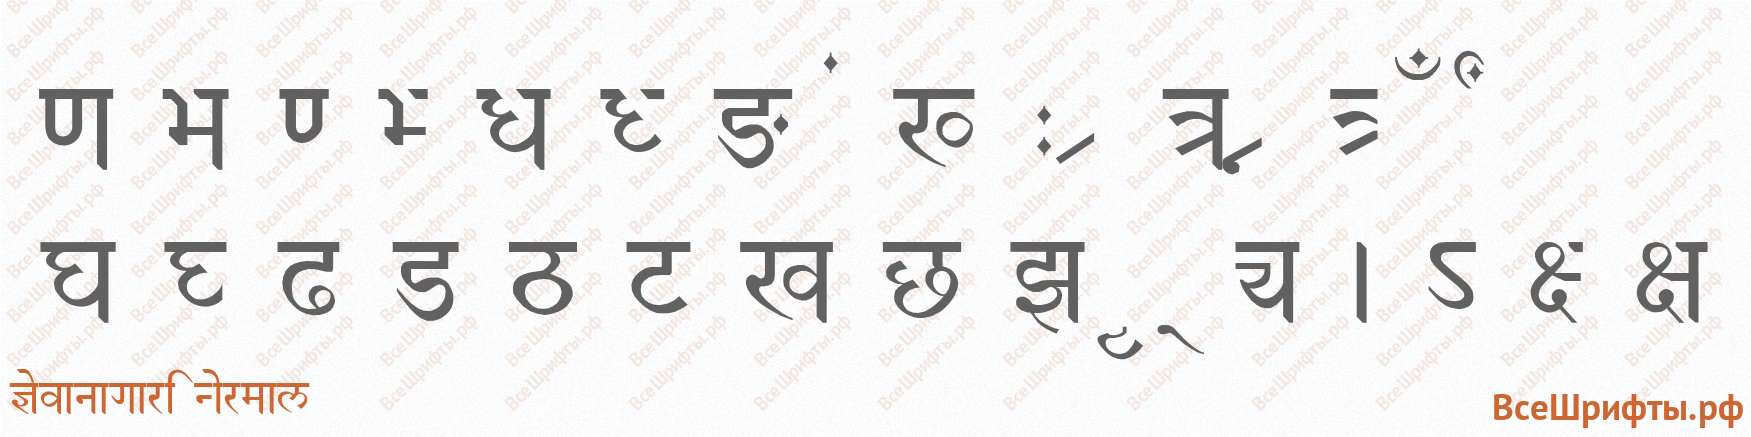 Шрифт Devanagari Normal со знаками препинания и пунктуации